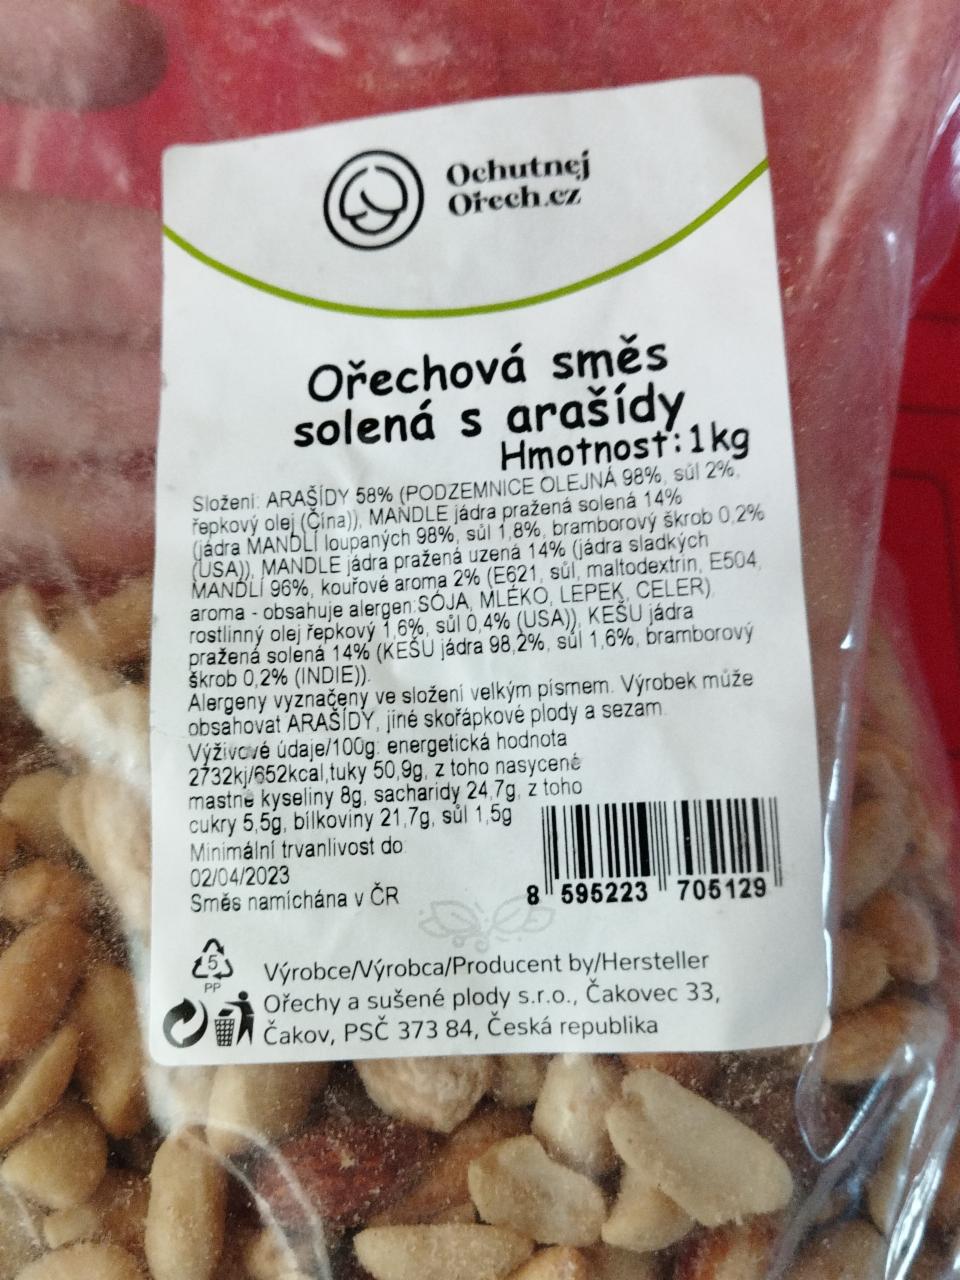 Fotografie - Ořechová směs solená s arašídy Ochutnejorech.cz